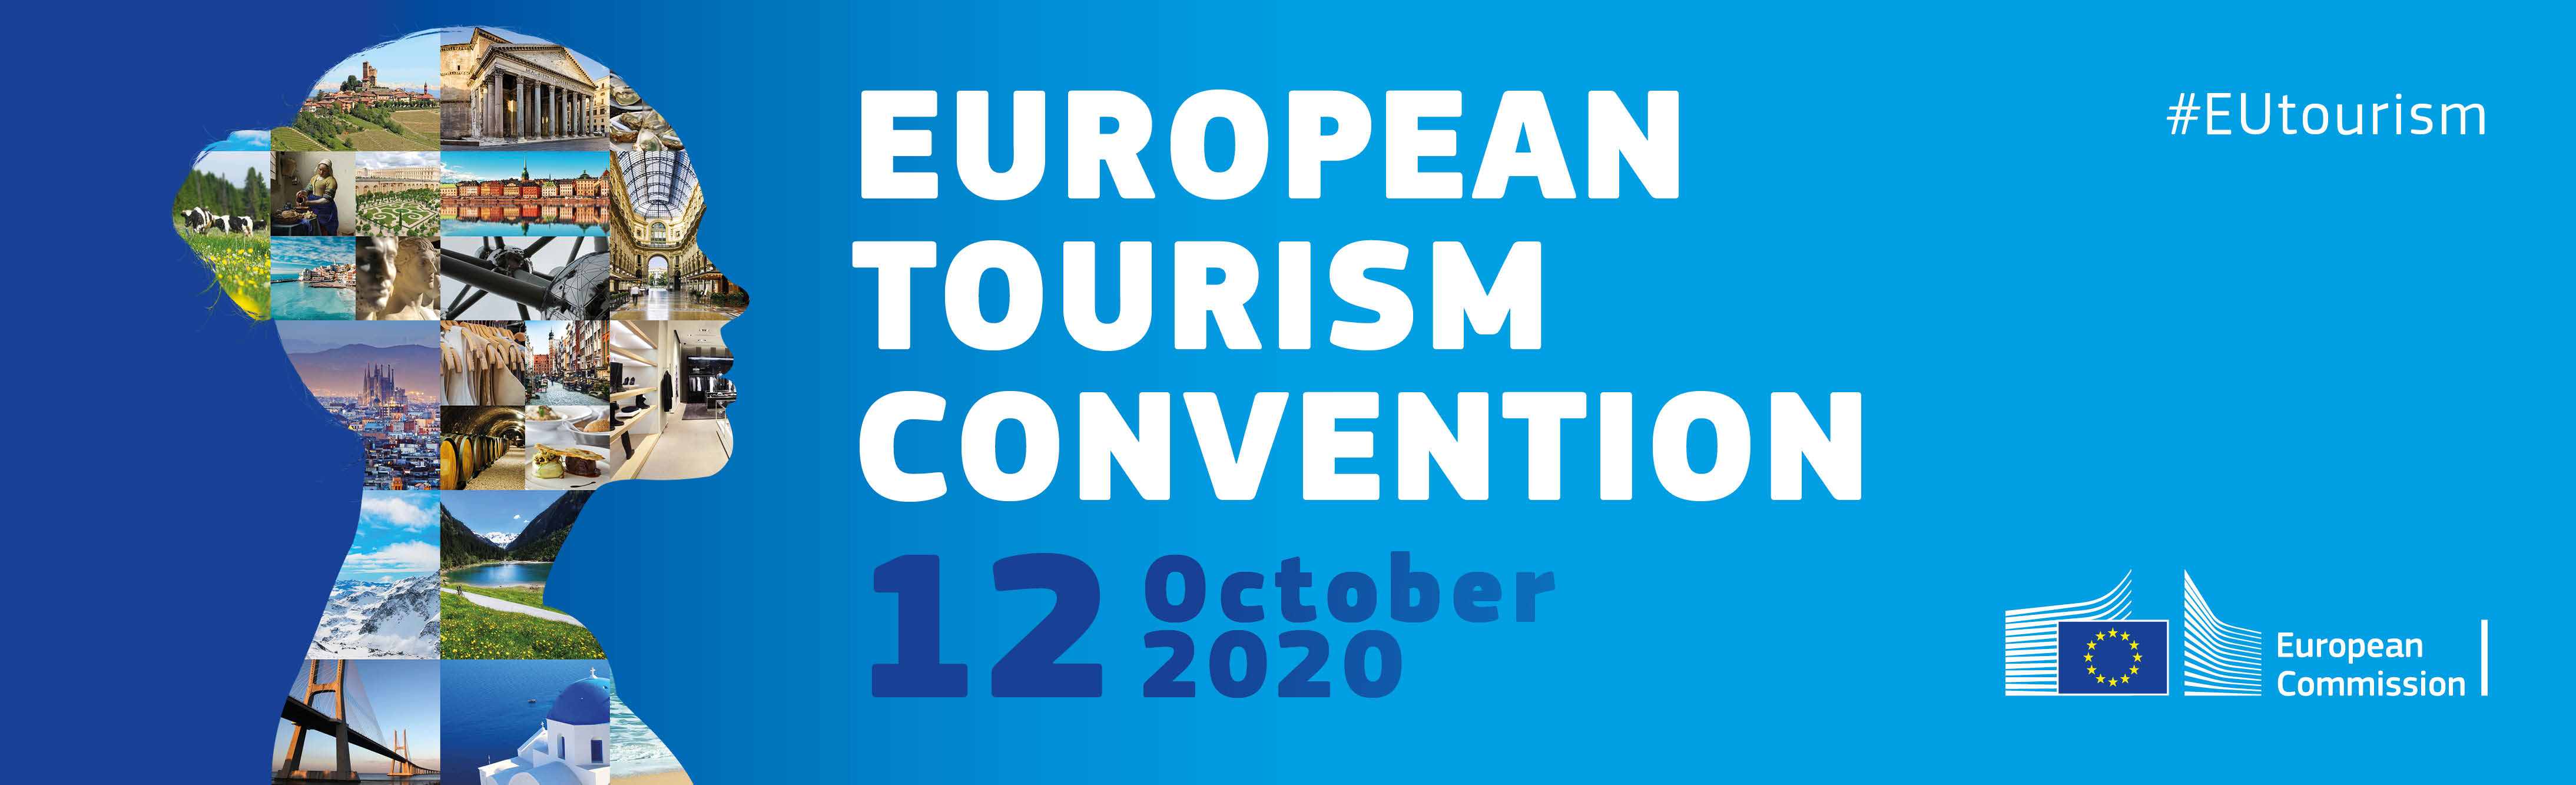 Convention Européenne du Tourisme